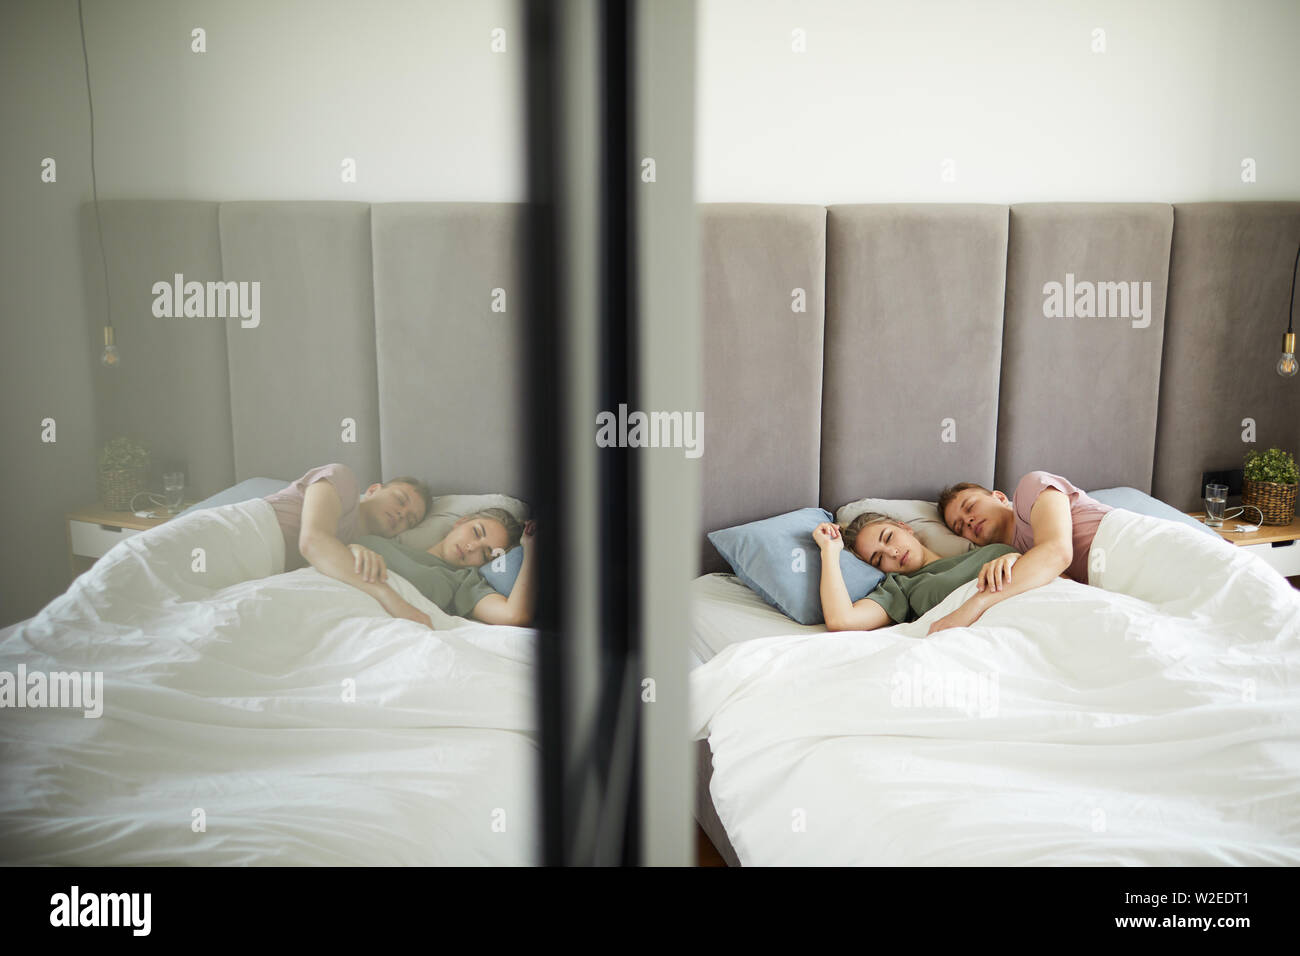 Junge zärtlich schlafen Paar im Bett unter der Decke liegen, Spiegel an der  Garderobe Stockfotografie - Alamy